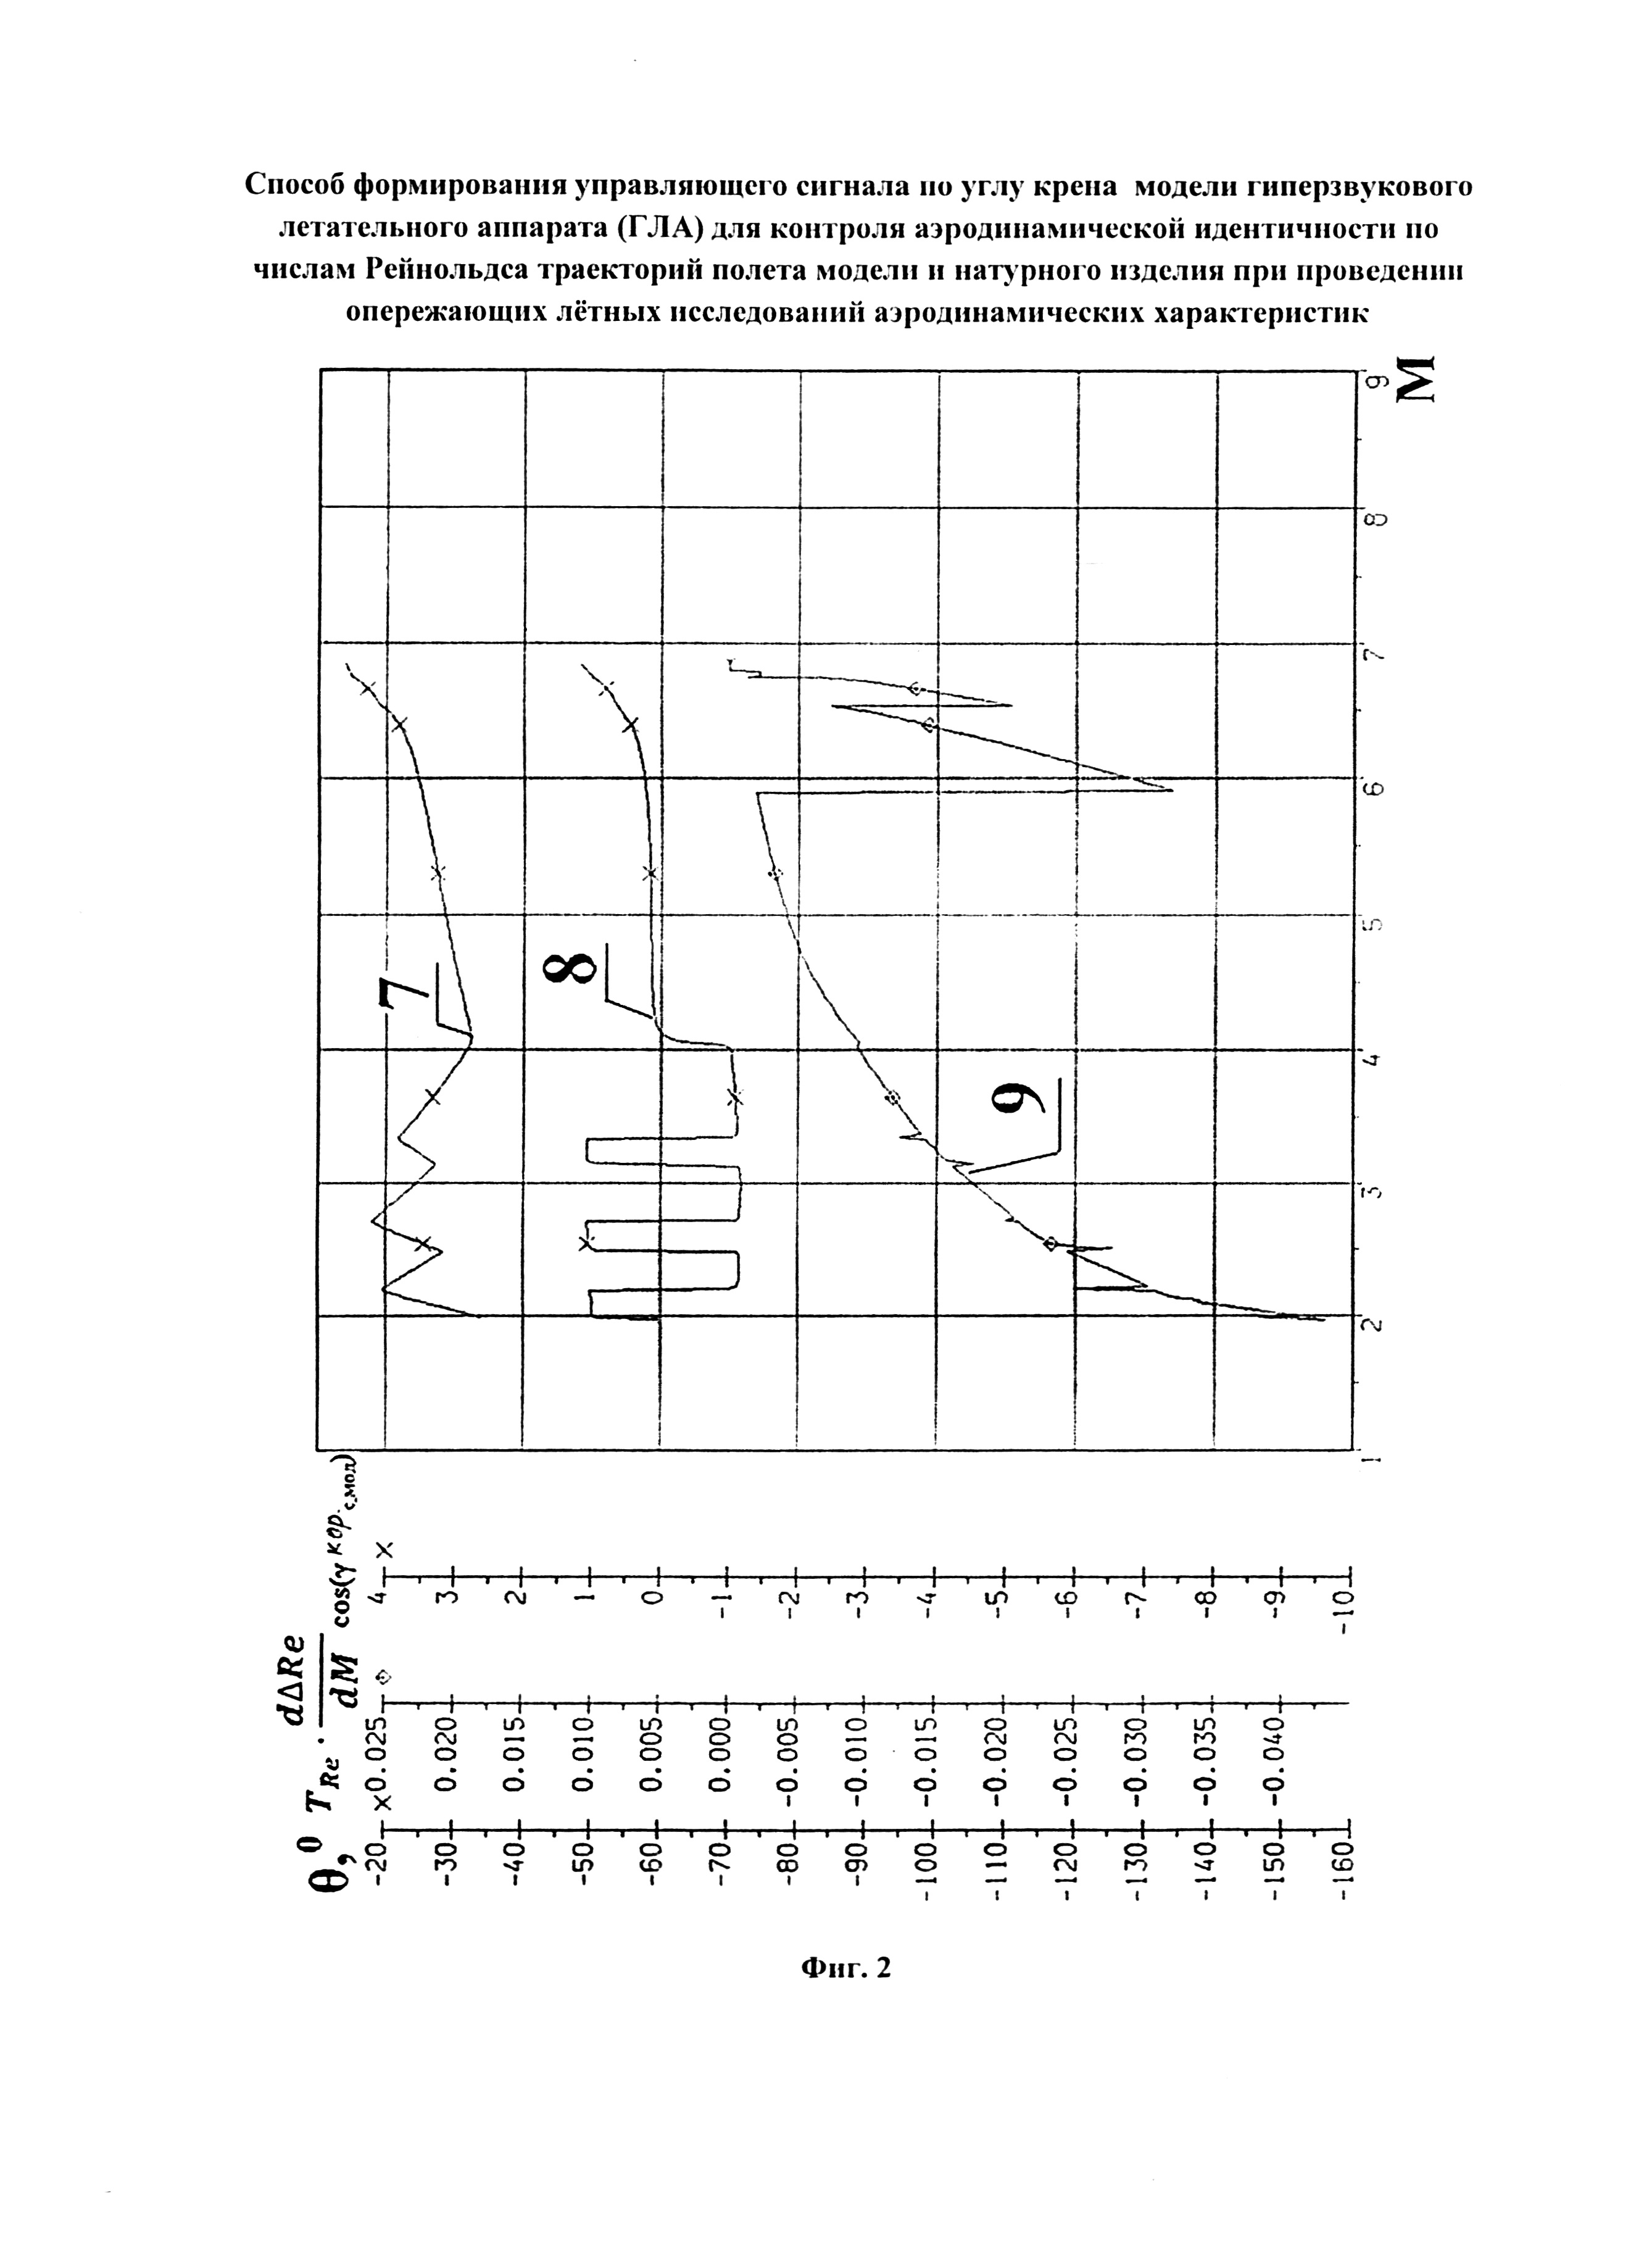 Способ формирования управляющего сигнала по углу крена модели гиперзвукового летательного аппарата (ГЛА) для контроля аэродинамической идентичности по числам Рейнольдса траекторий полёта модели и натурного изделия при проведении опережающих лётных исследований аэродинамических характеристик